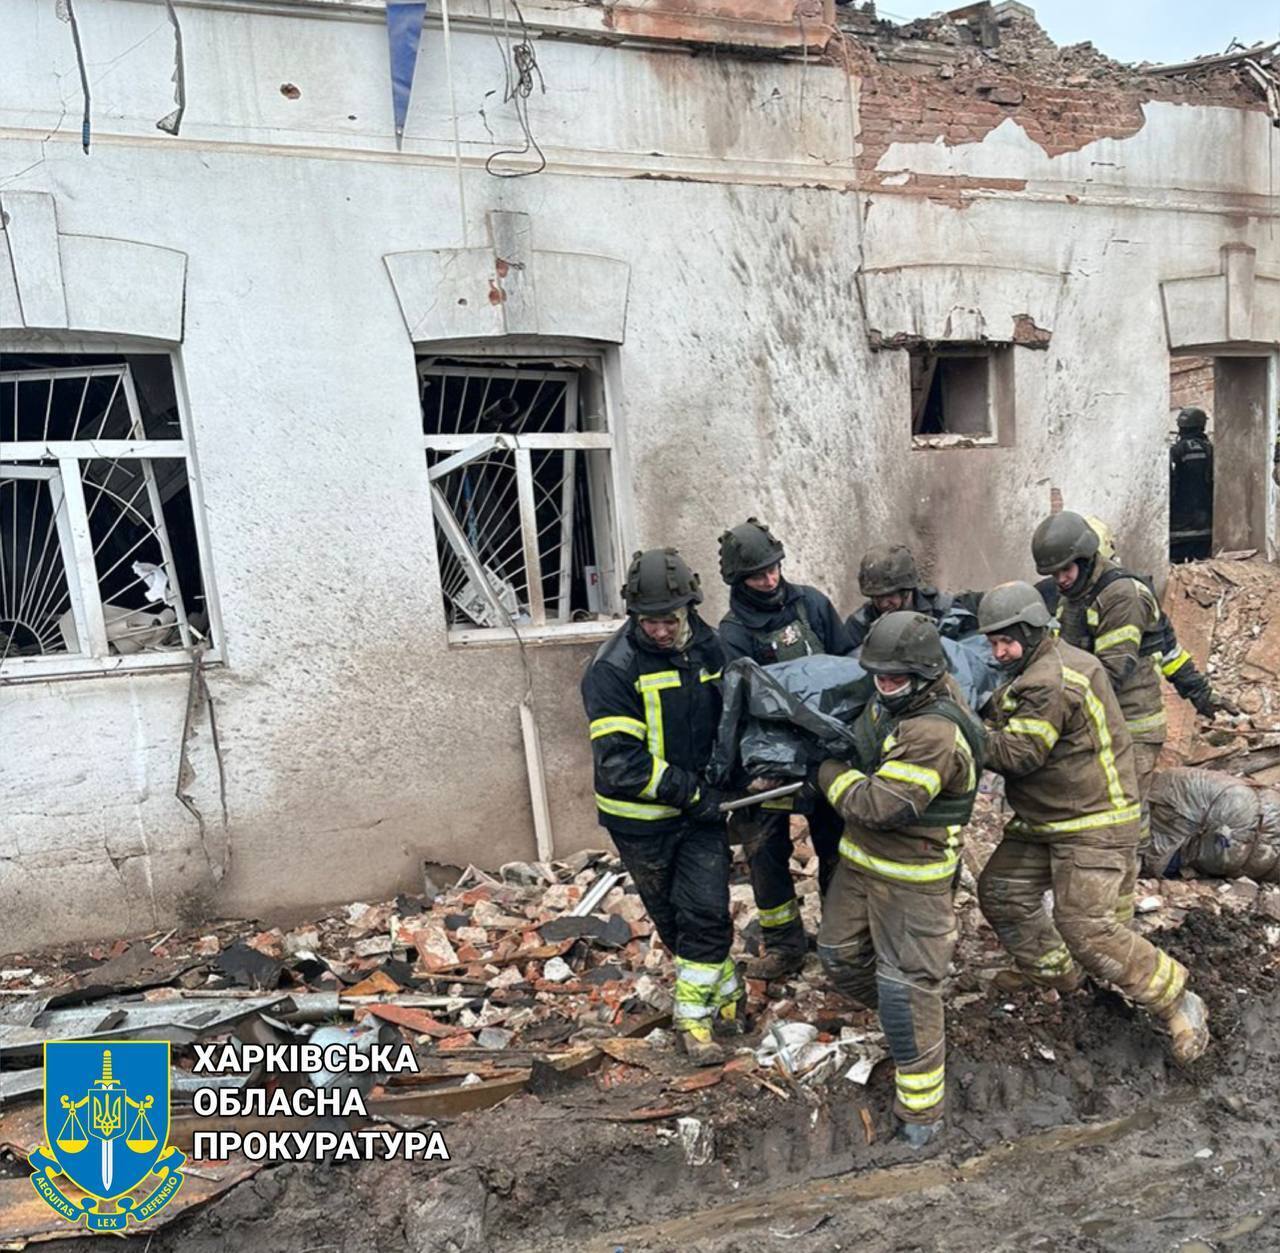 Оккупанты обстреляли центр Купянска и попали в музей: под завалами оказались люди, есть погибшие и много раненых. Видео